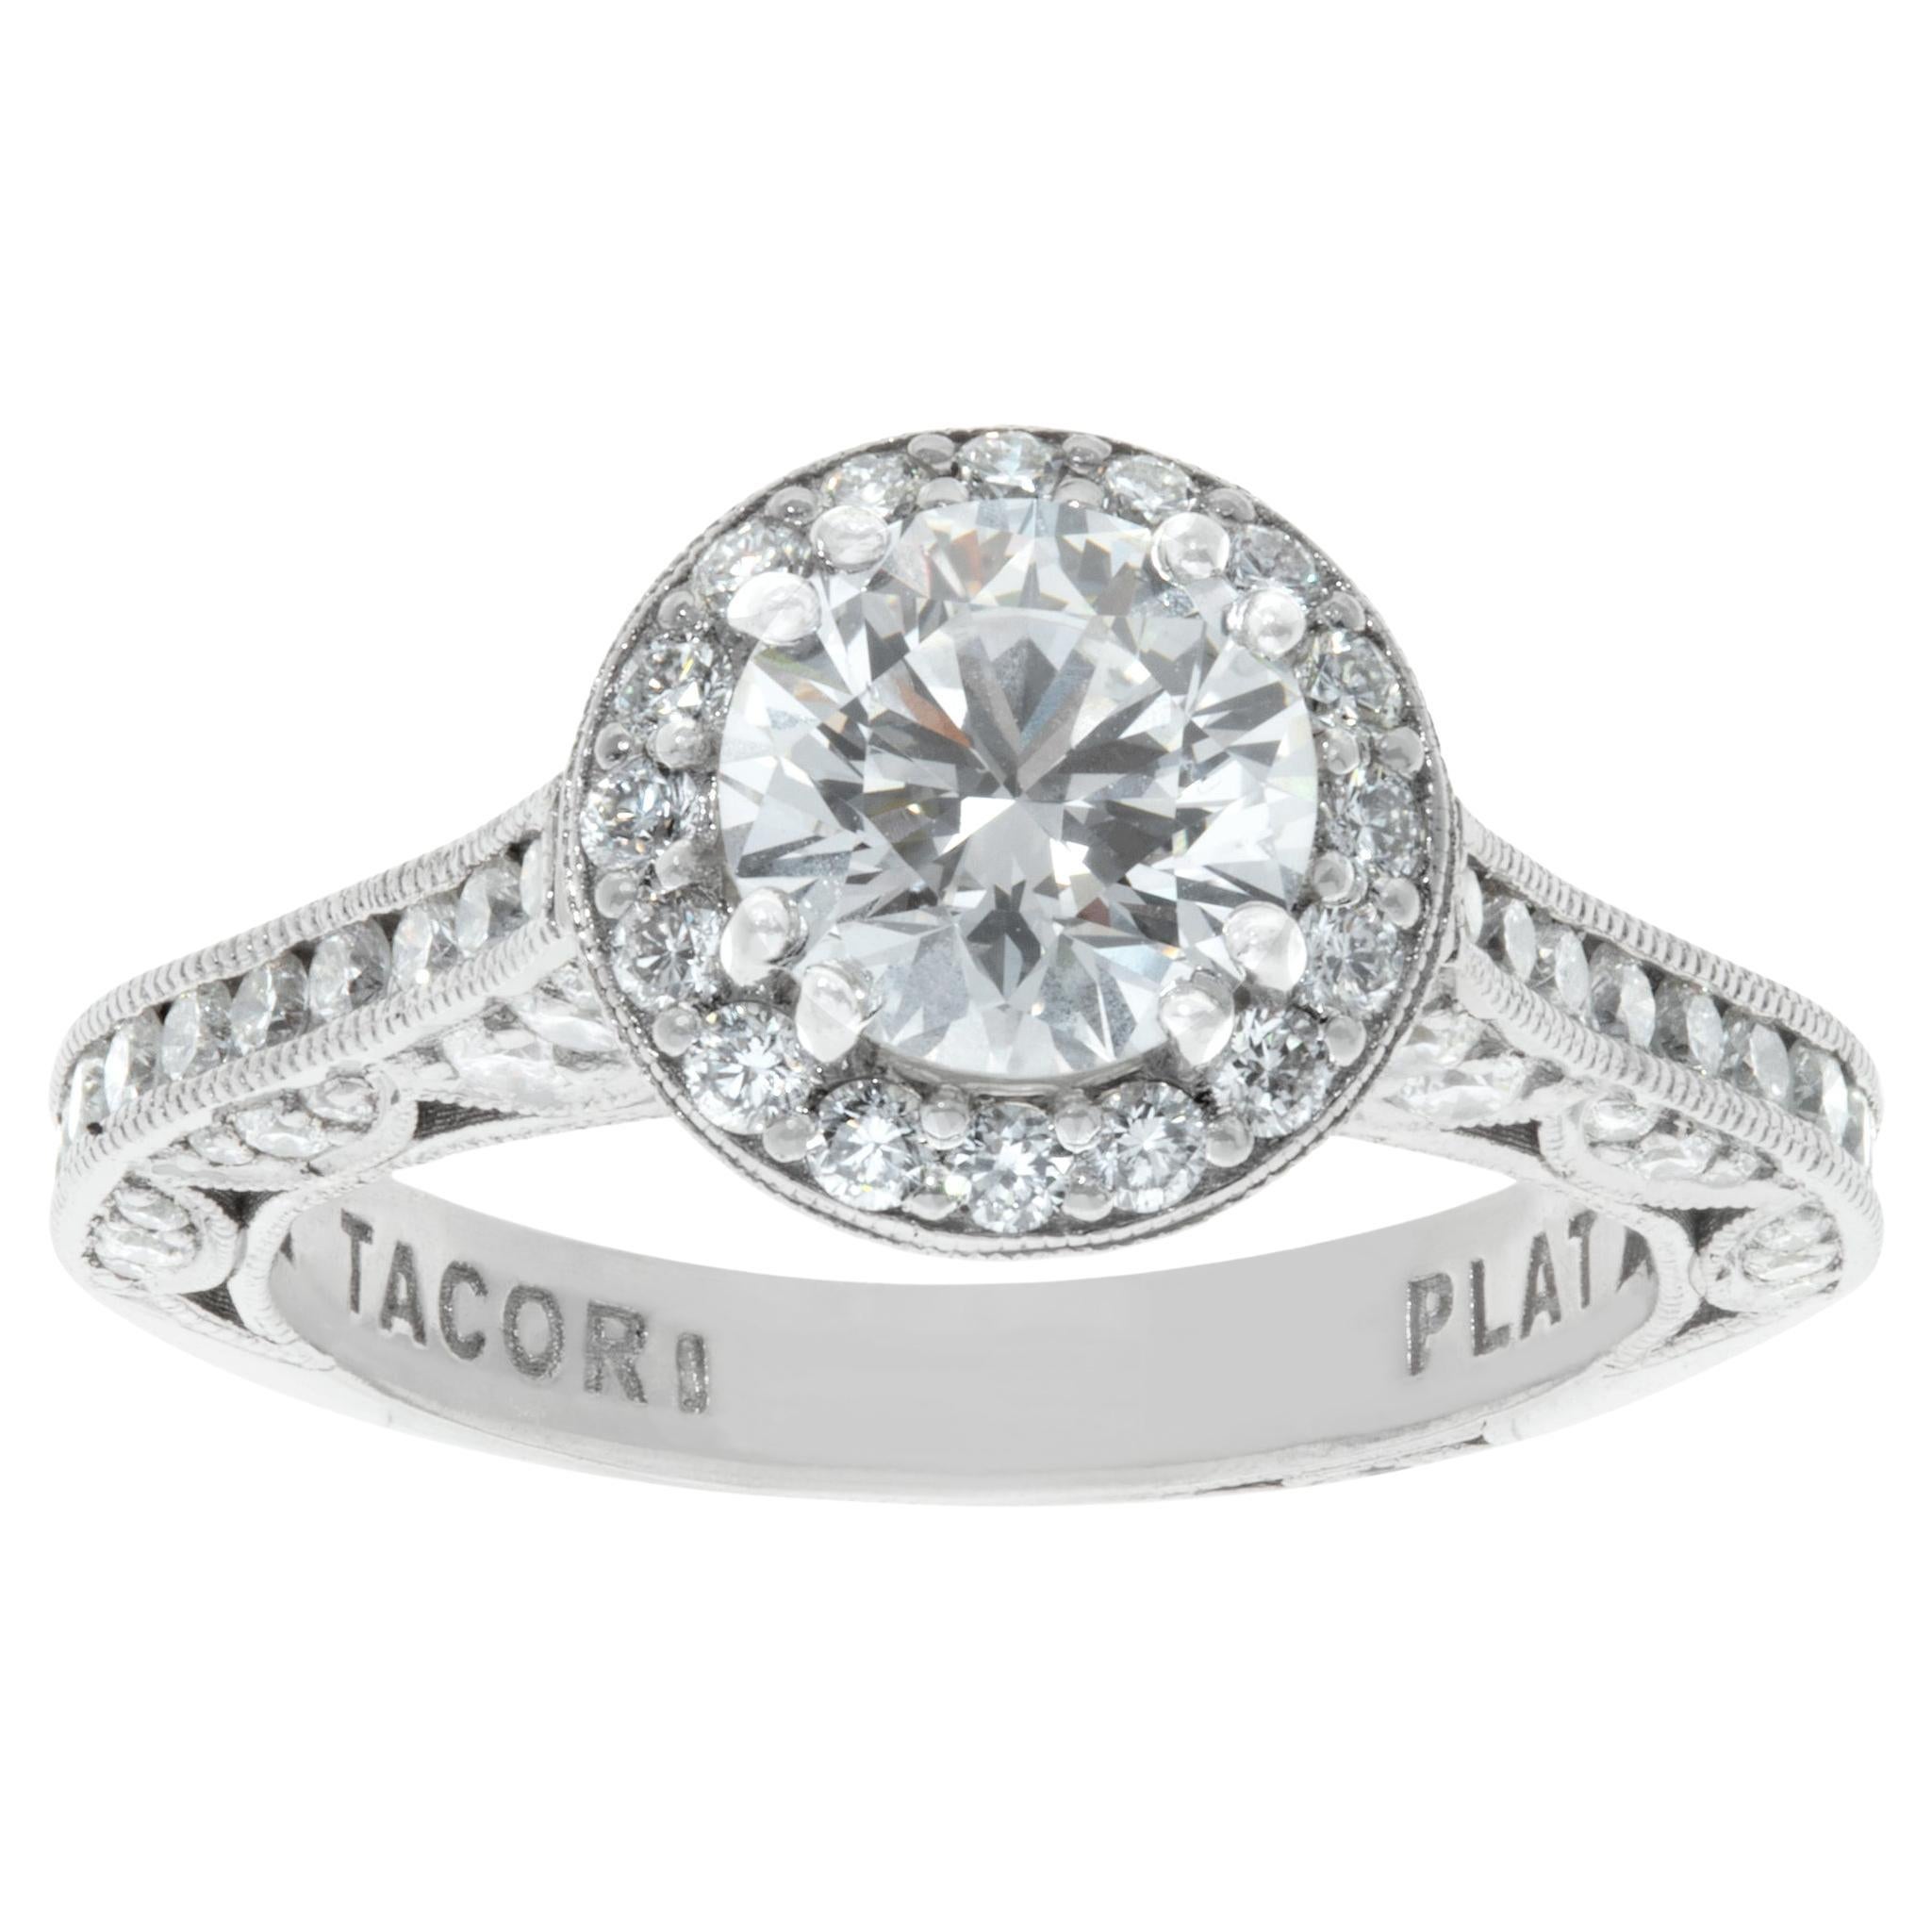 GIA certified round brilliant cut diamond 1.02 carat ring set in Tacori platinum For Sale